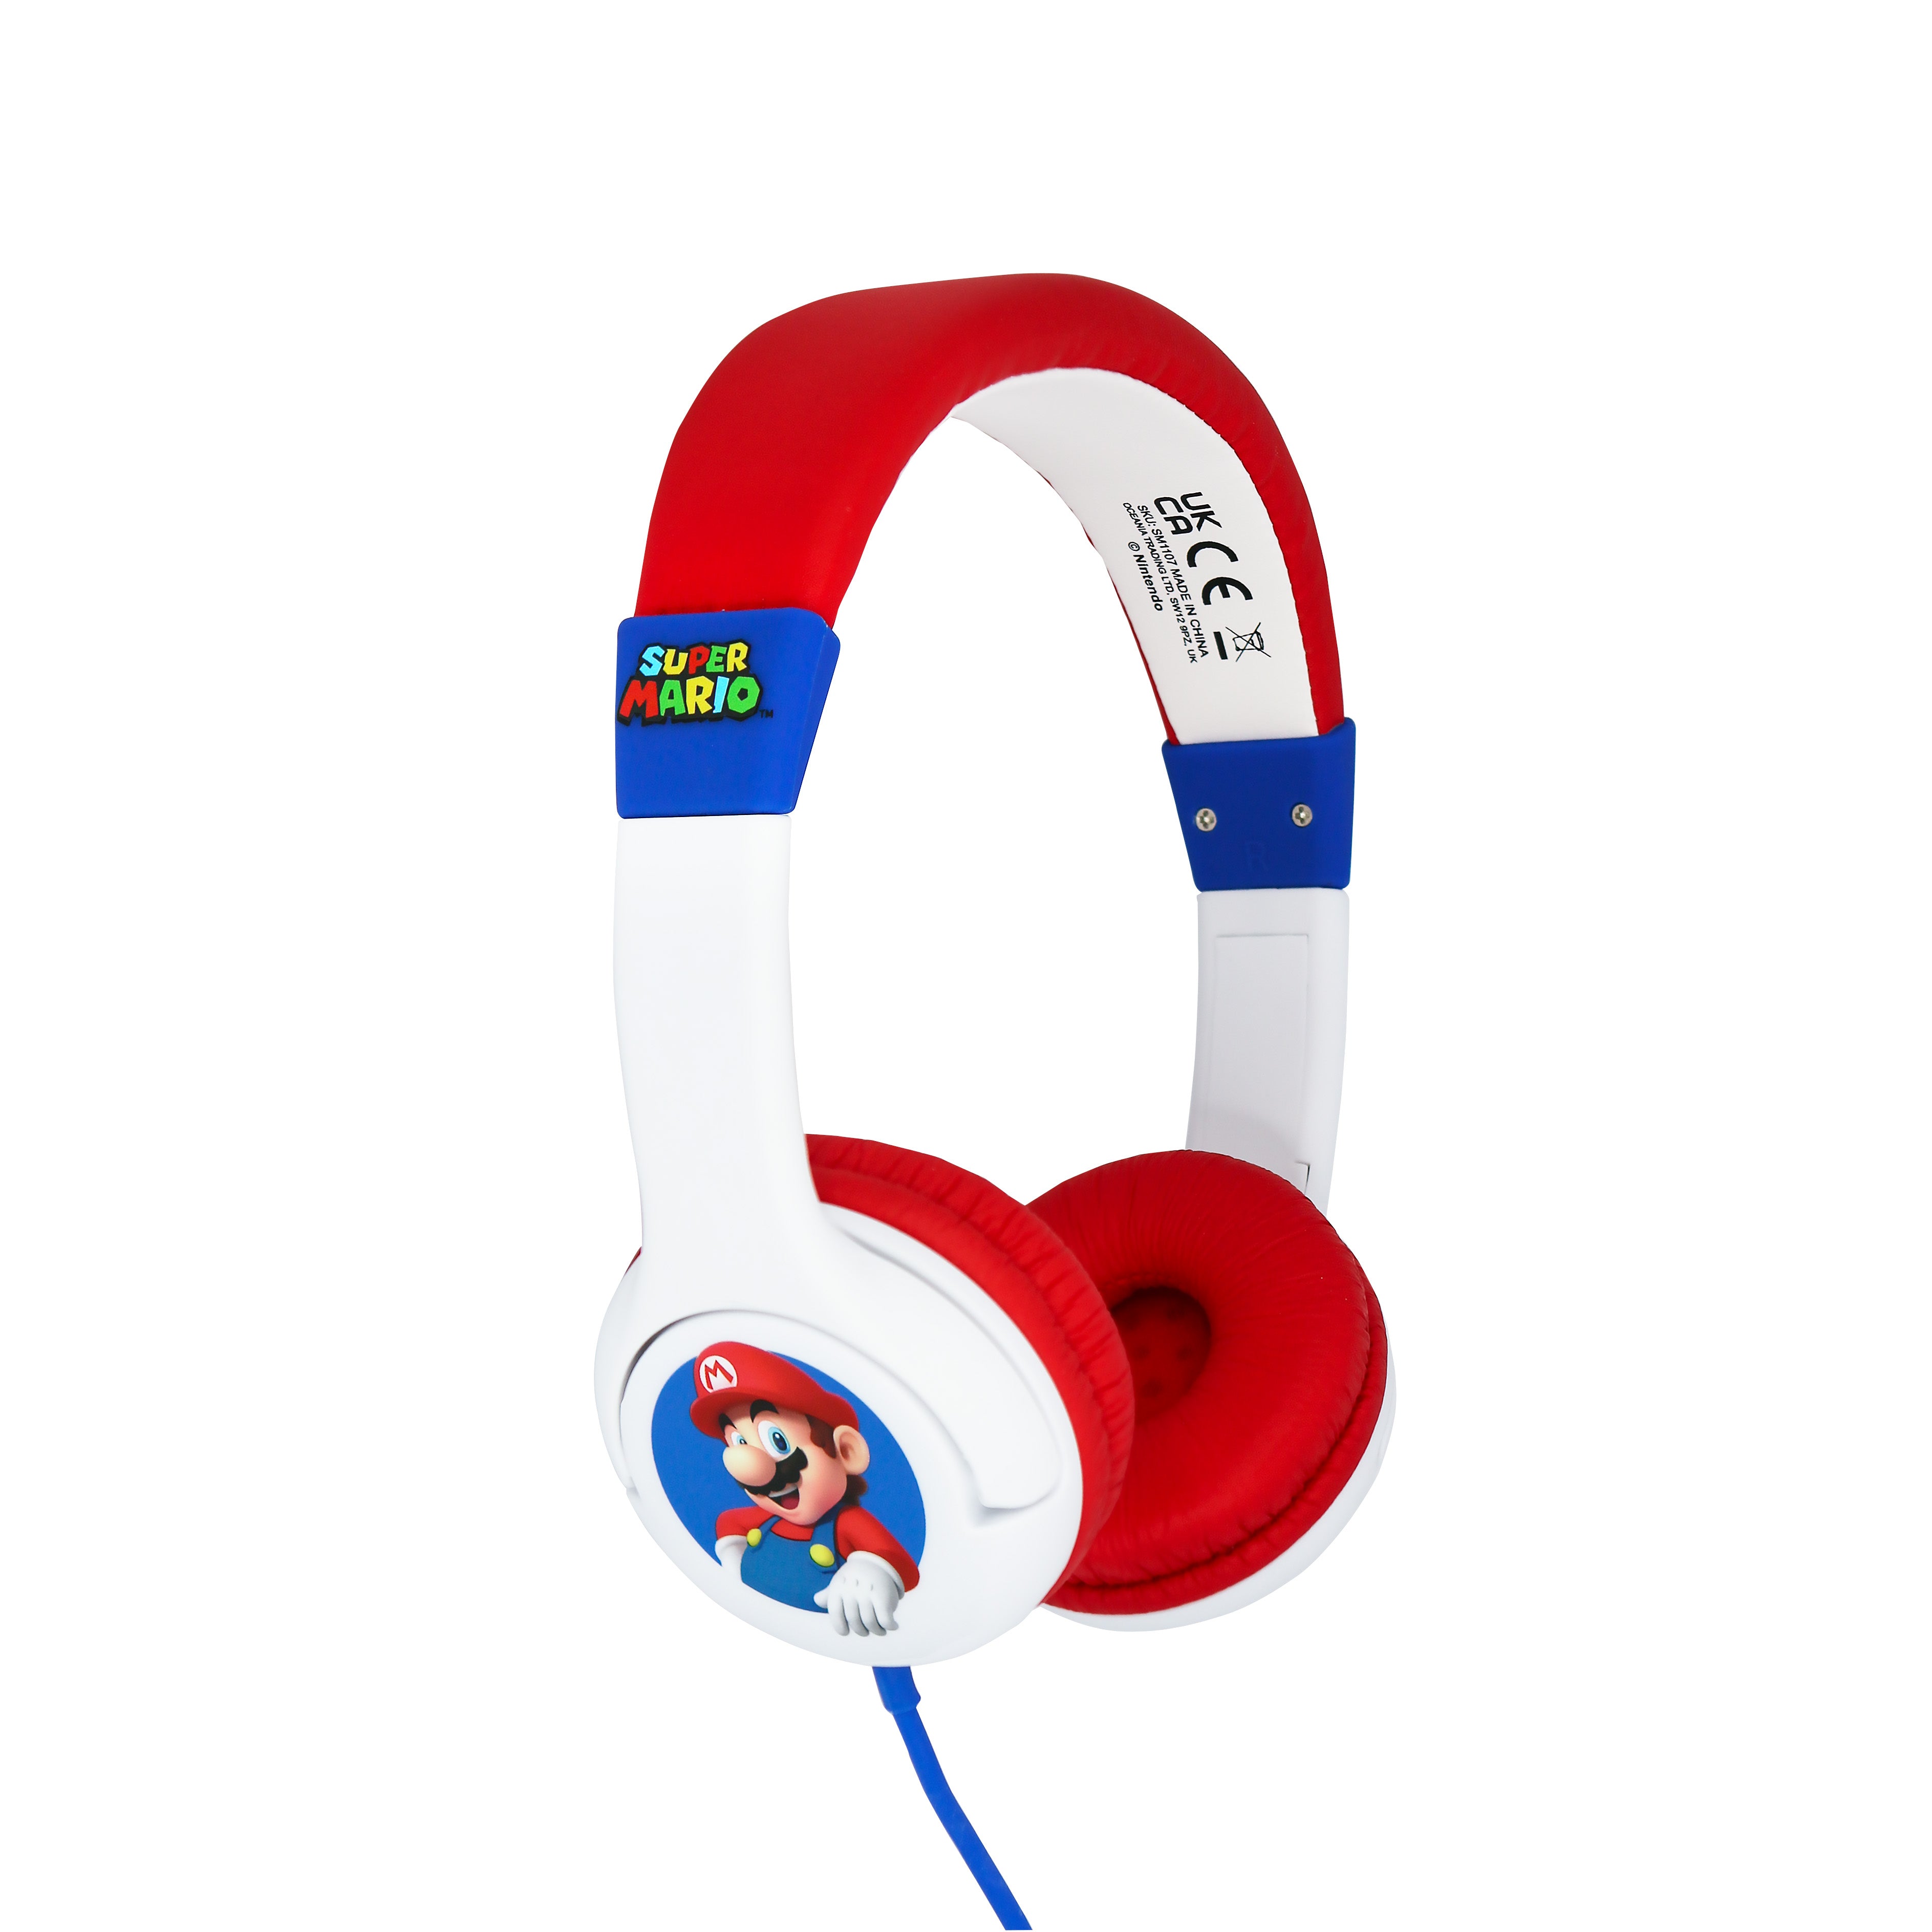 Nintendo Super Mario Kids Wired Headphones